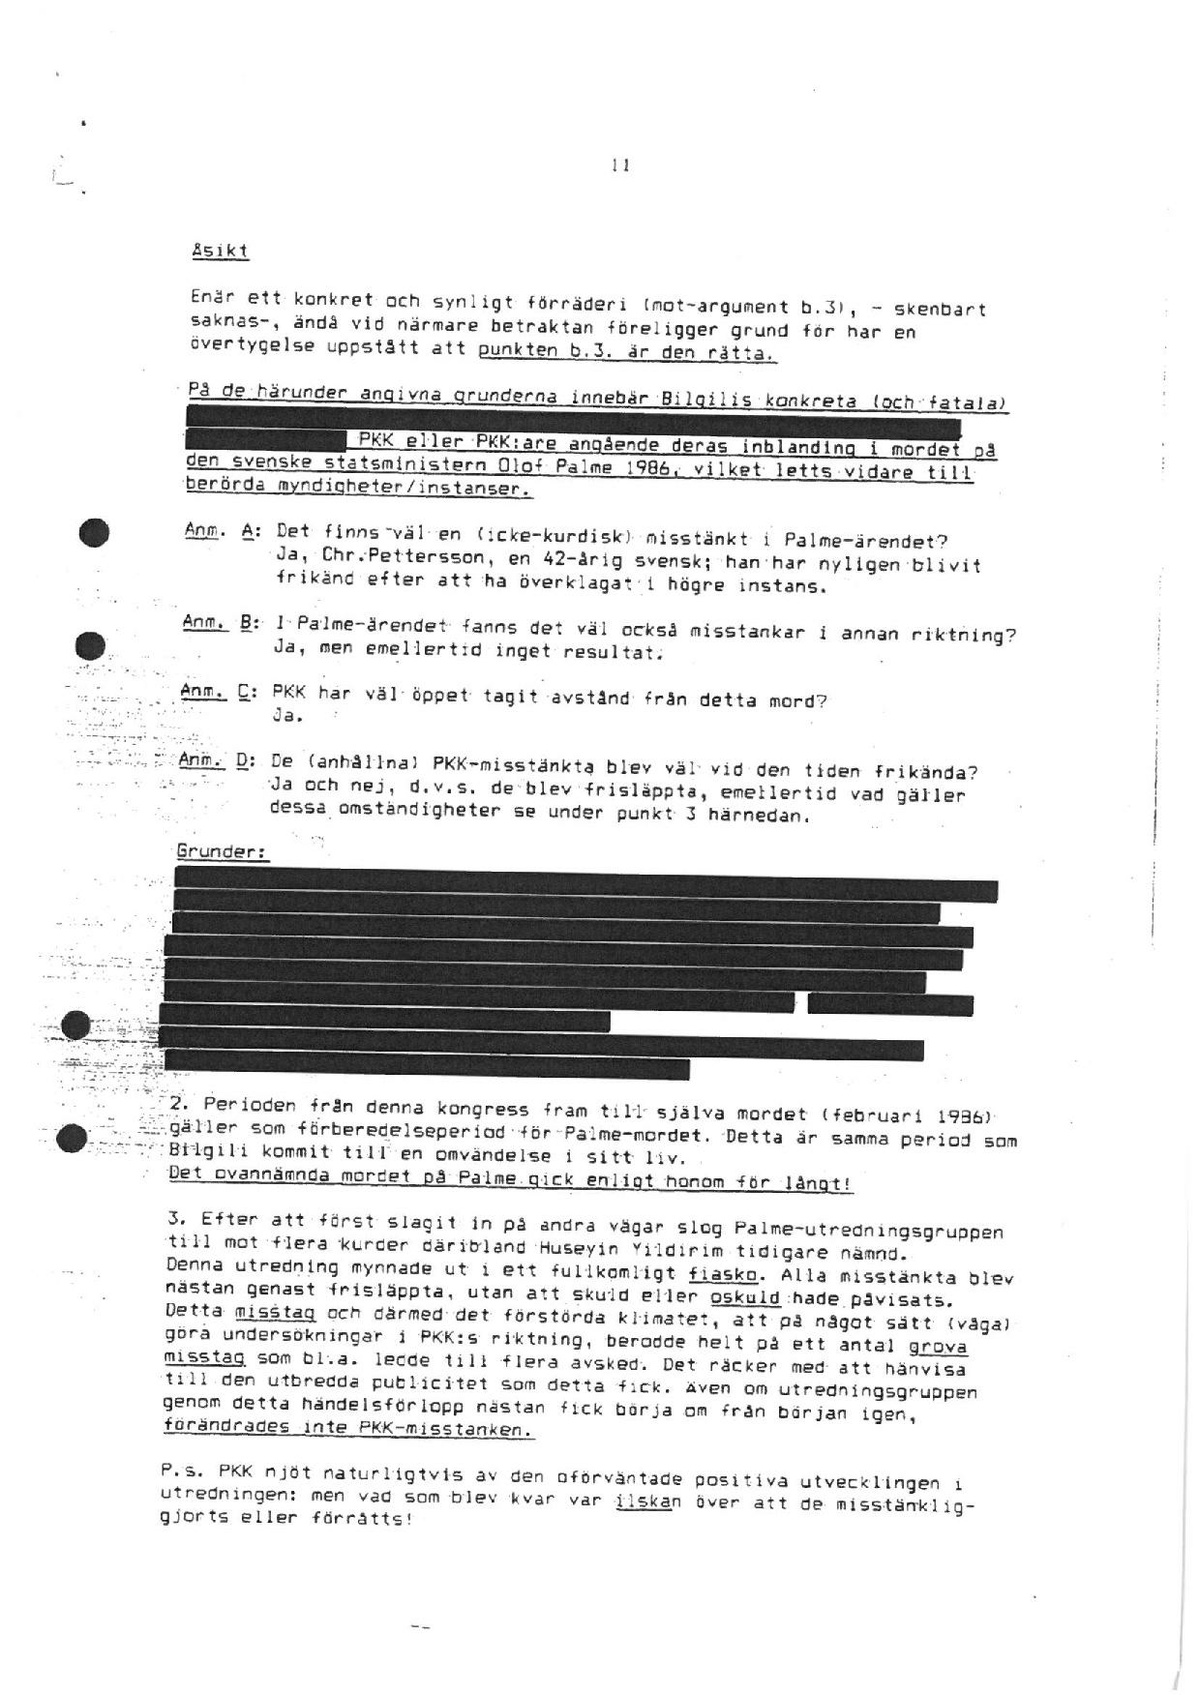 Pol-1990-12-26 Y13604-01 Uppslag Mahmut Bilgili - Kontakter med Dolf von Soest.pdf